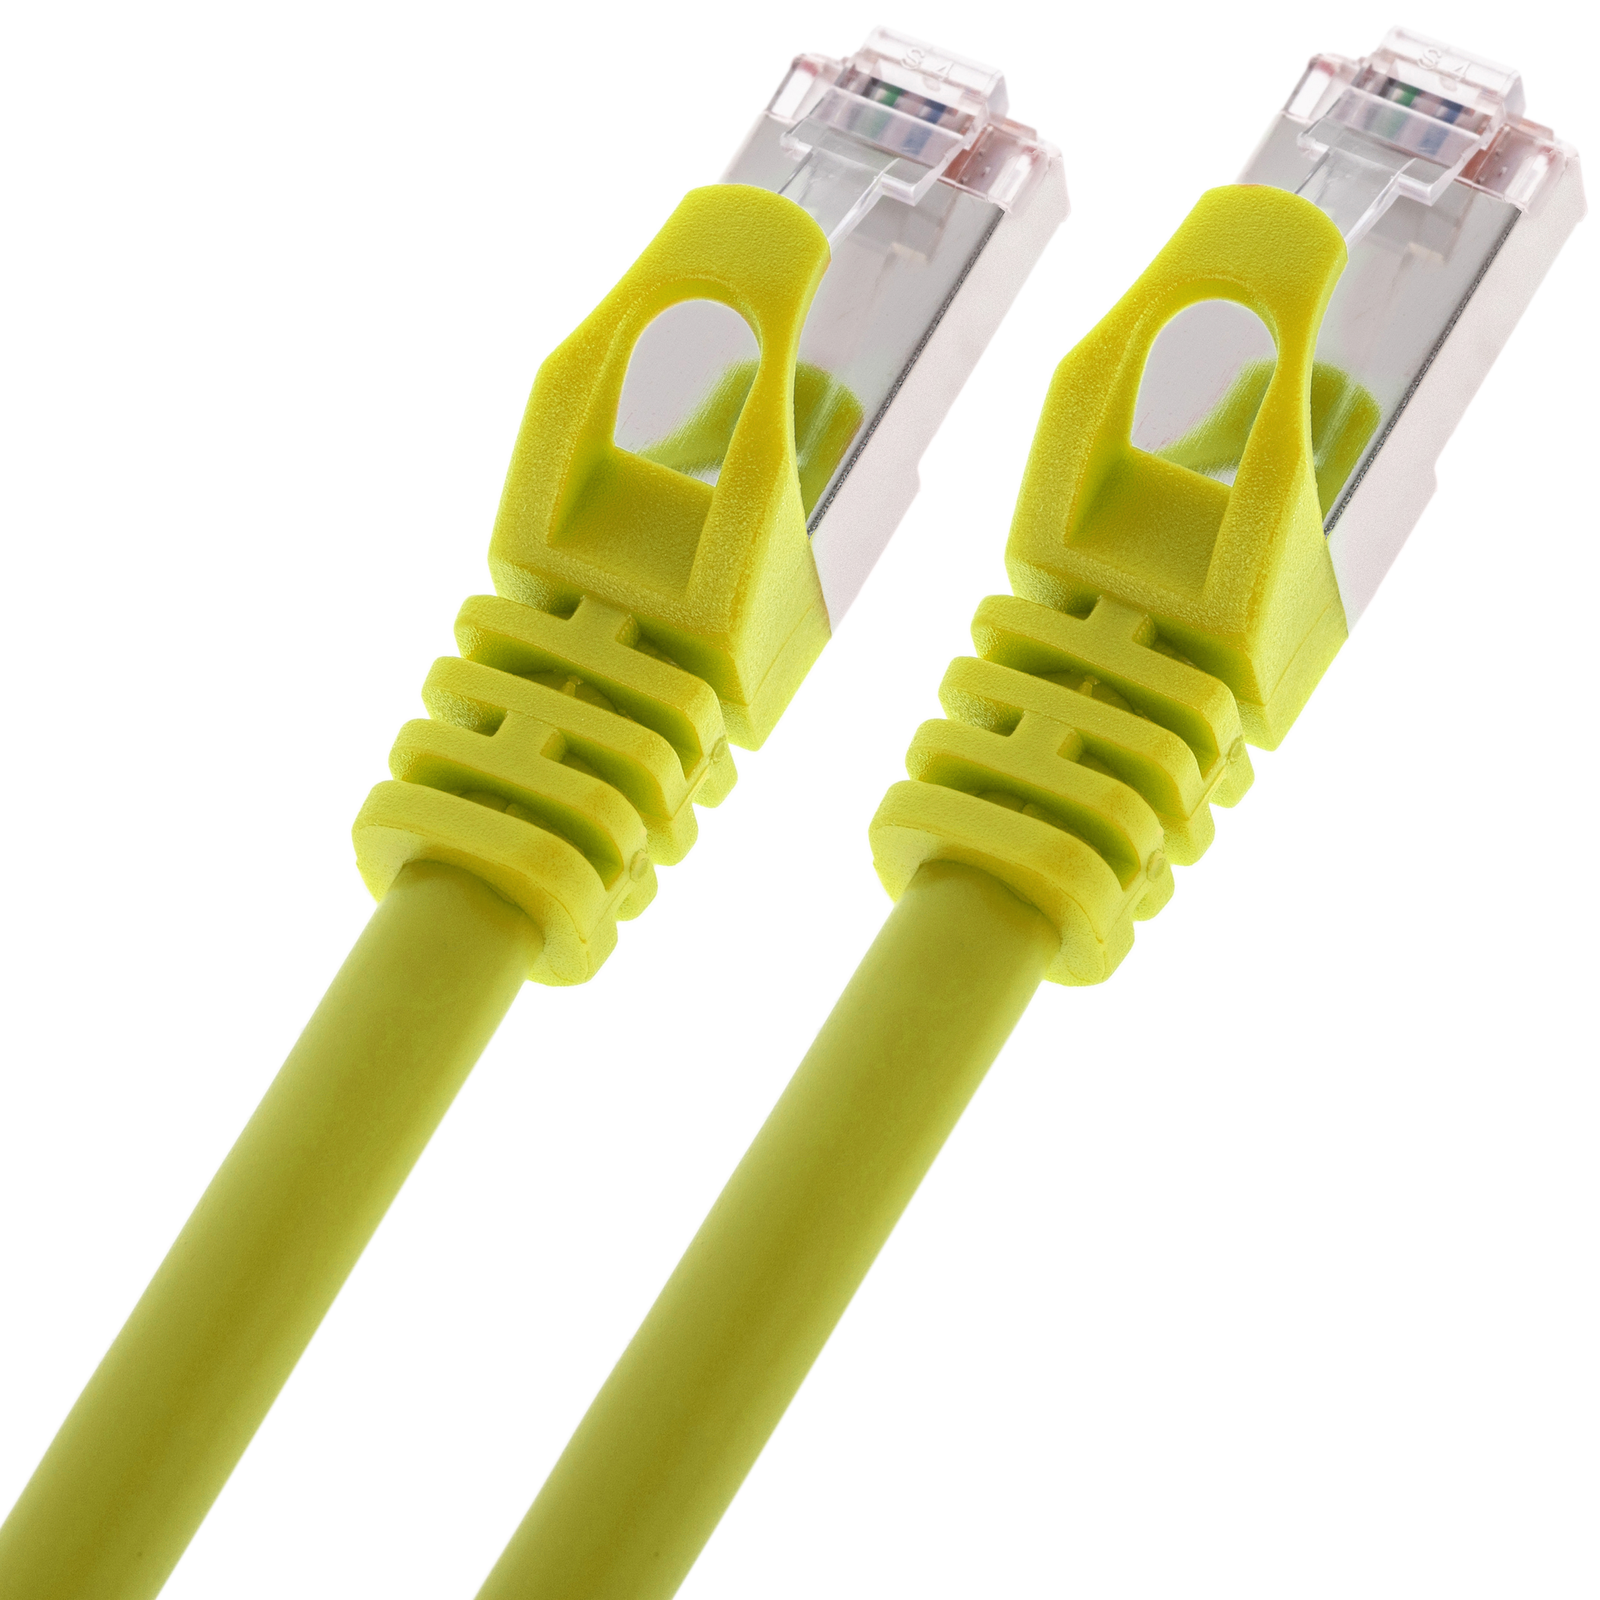 Câble réseau Ethernet LAN FTP RJ45 Cat.6a bleu 5m - Cablematic